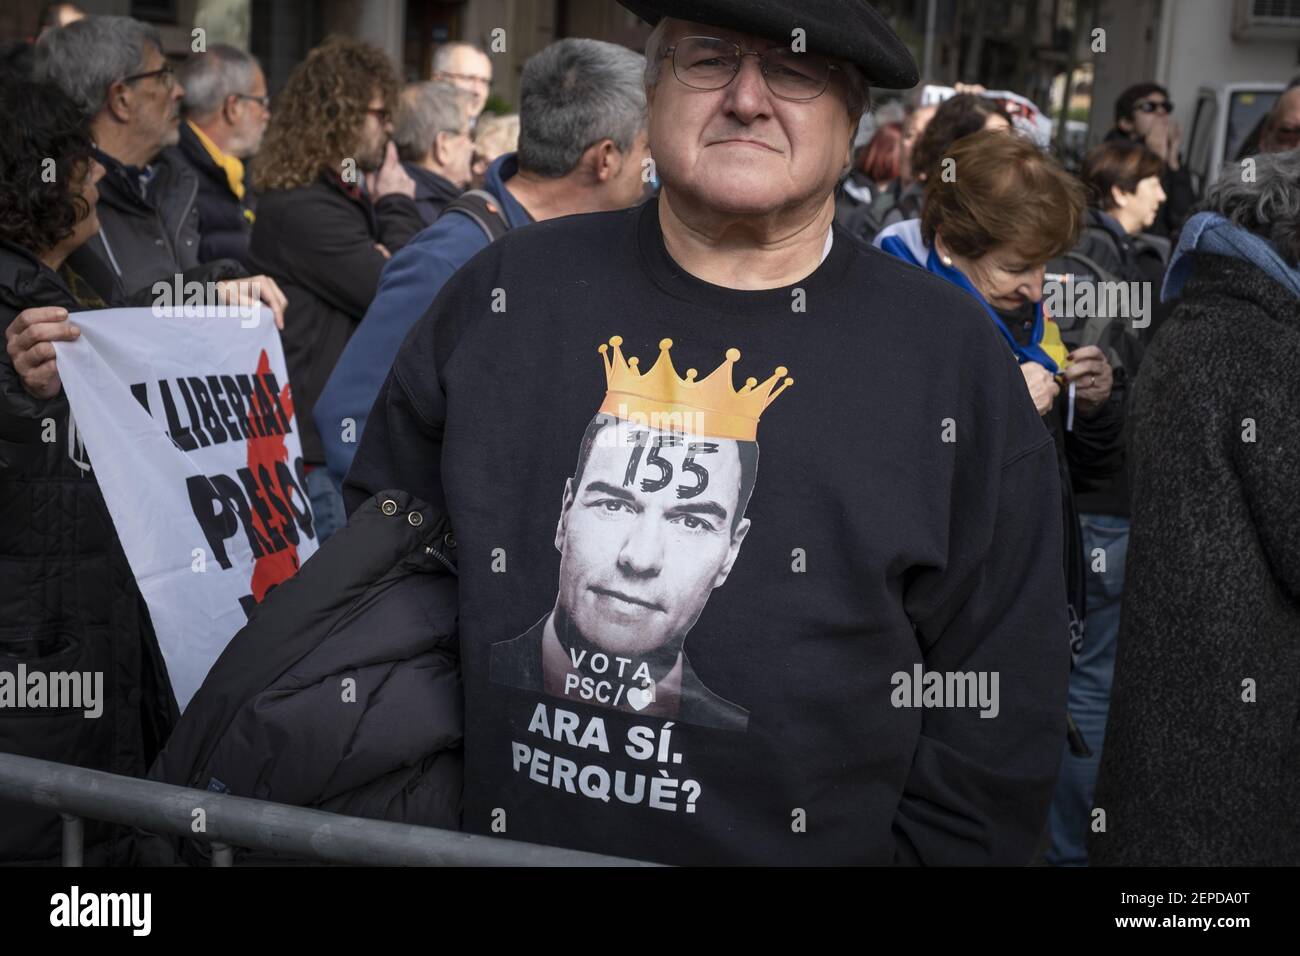 Un manifestante es visto usando una camisa con una caricatura del  presidente Pedro Sánchez usando una corona real durante la manifestación.  Cientos de manifestantes por la independencia de Cataluña se reunieron  frente